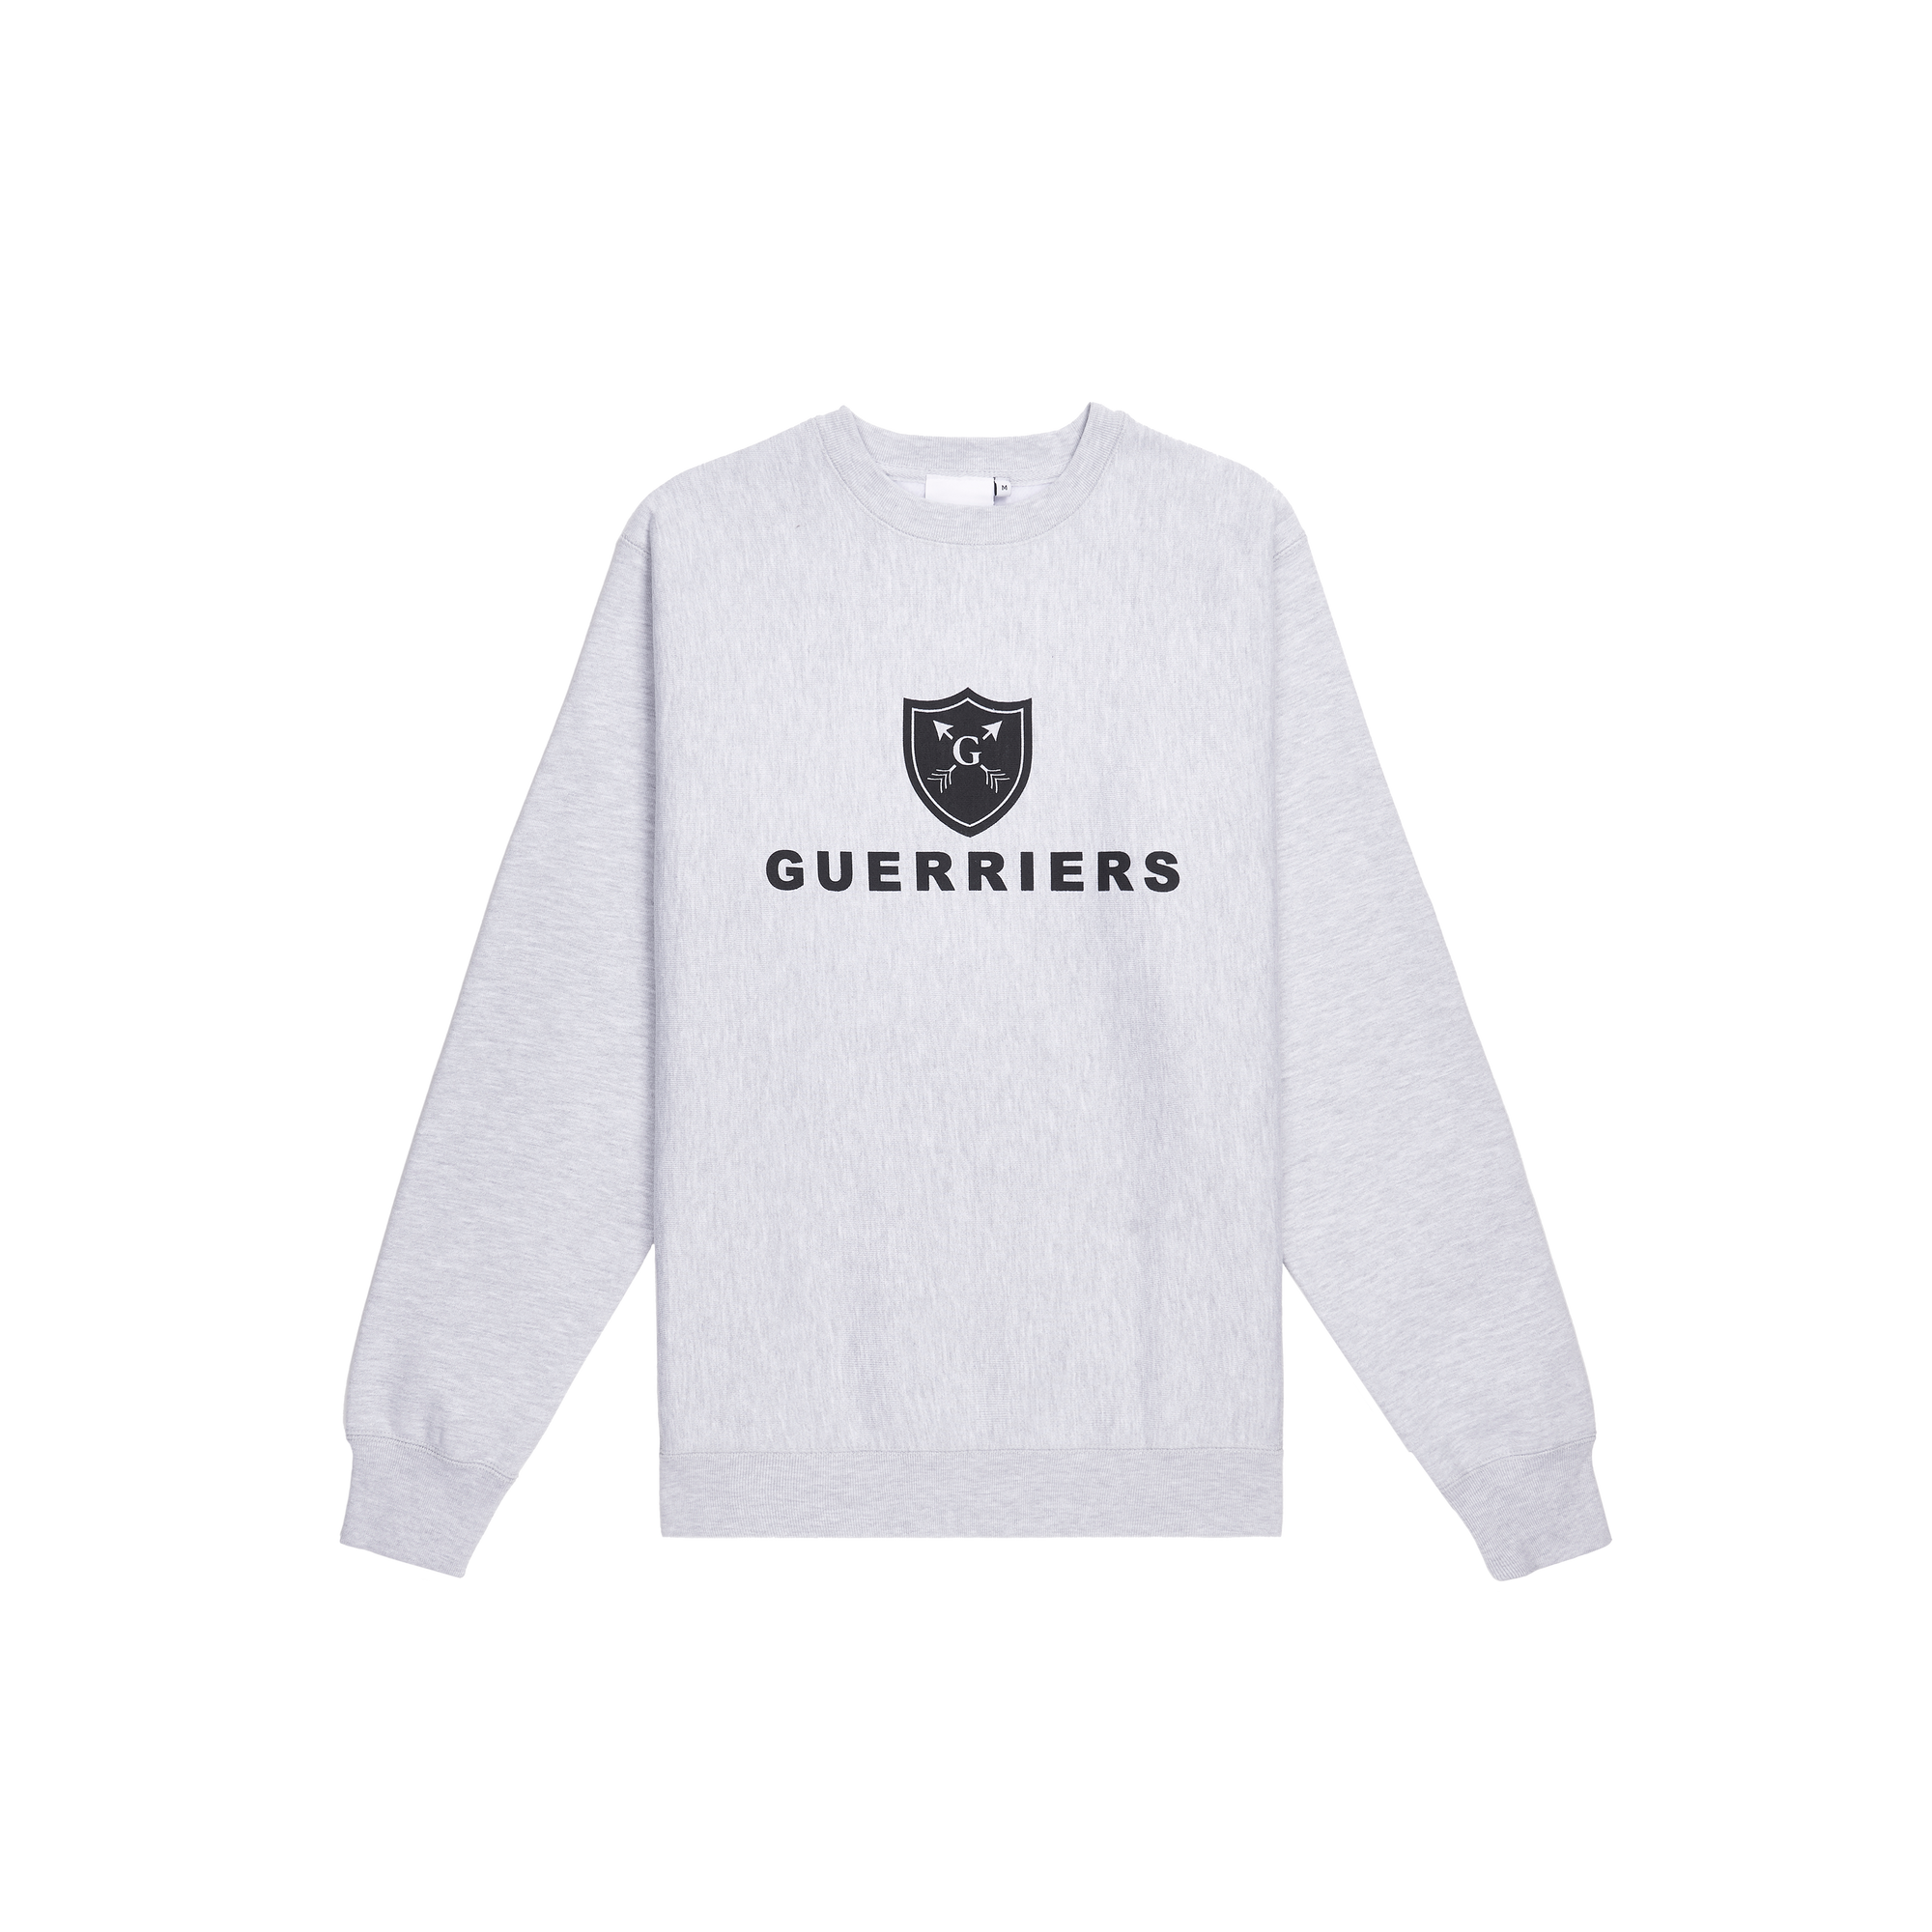 Warrior Sweatshirt Front Grey | Guerriers